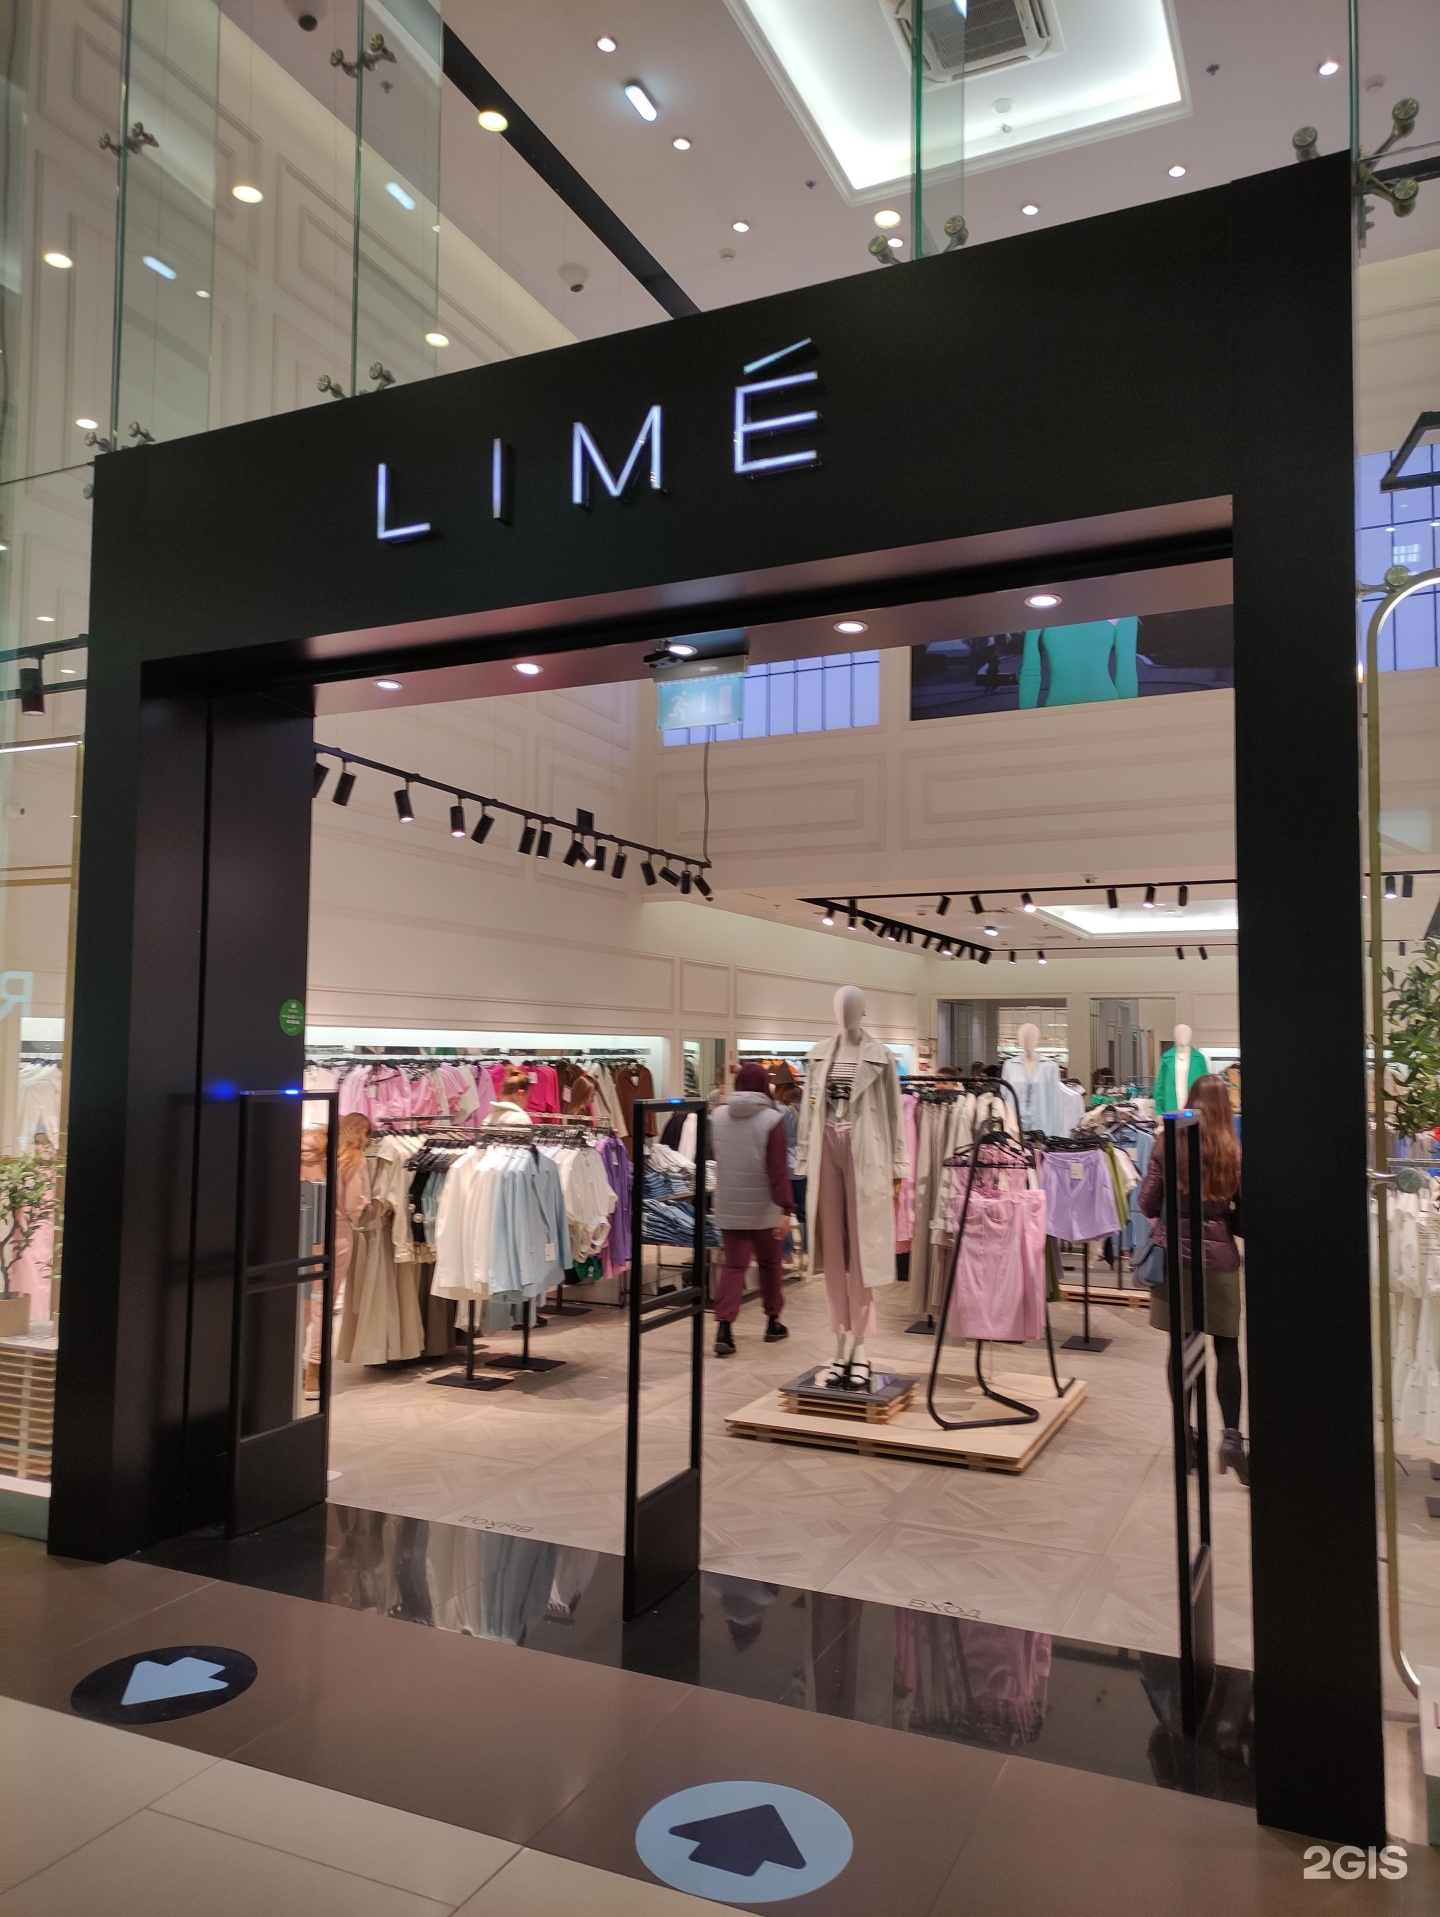 Одежда орджоникидзе. Lime одежда Columbus. Lime женская одежда магазины в Москве. Владелец магазина Lime. Lime магазин одежды новый.